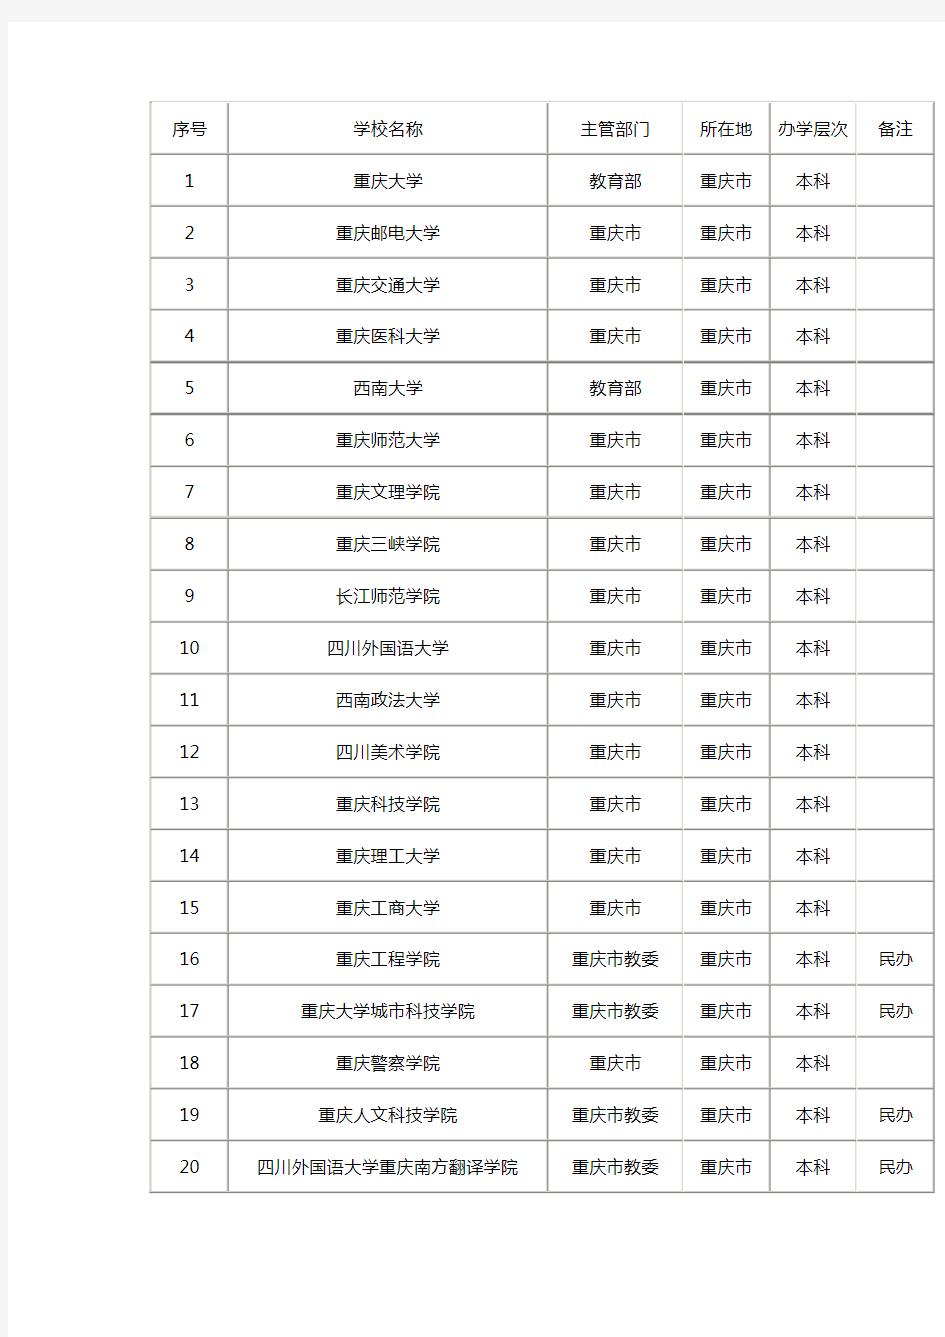 重庆所有高校名单